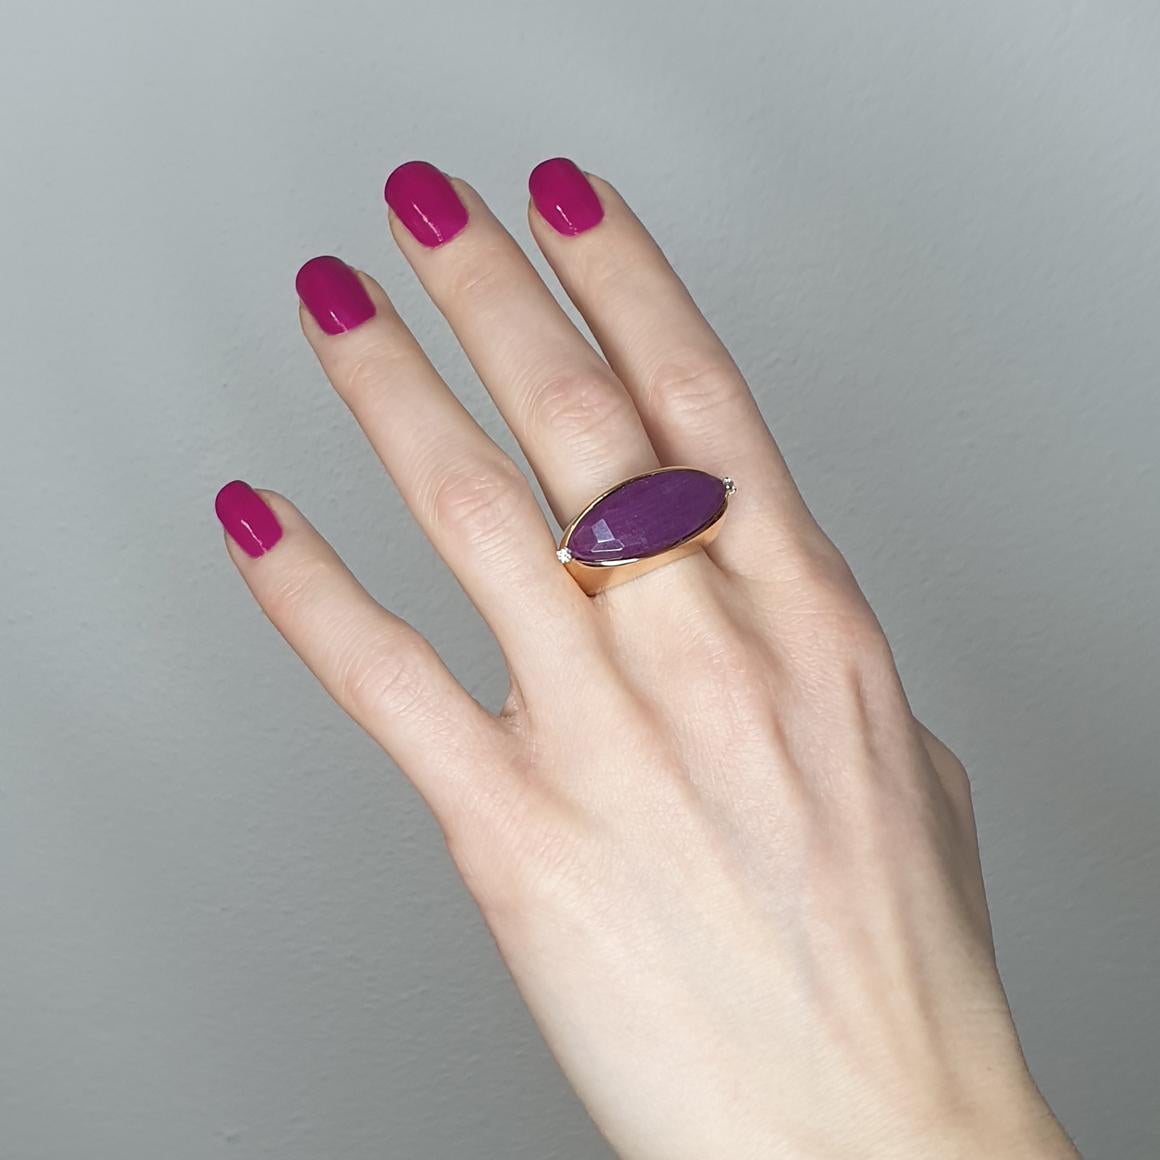 Design und Mode für diese erstaunliche Ring in Roségold 18kt Handgefertigt in Italien von Stanoppi Jewellery seit 1948.  Weiße Diamanten   cts 0,04  und Root Ruby 
Größe: EU  15  /    USA 7,5  g.14,50

Alle Stanoppi Schmuck ist neShiny gelben